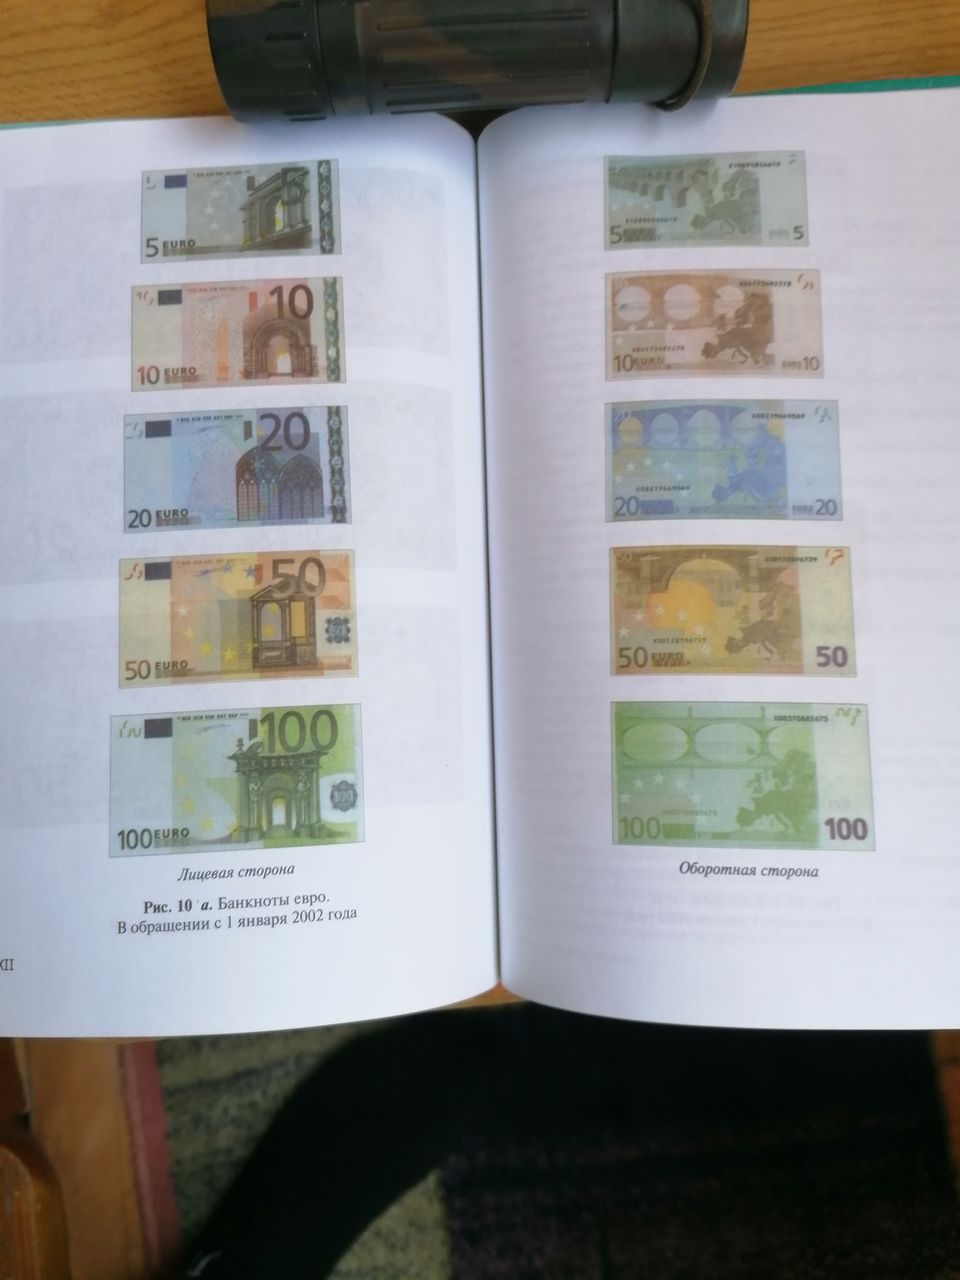 2 евро обмен валюты одна сатоши это сколько